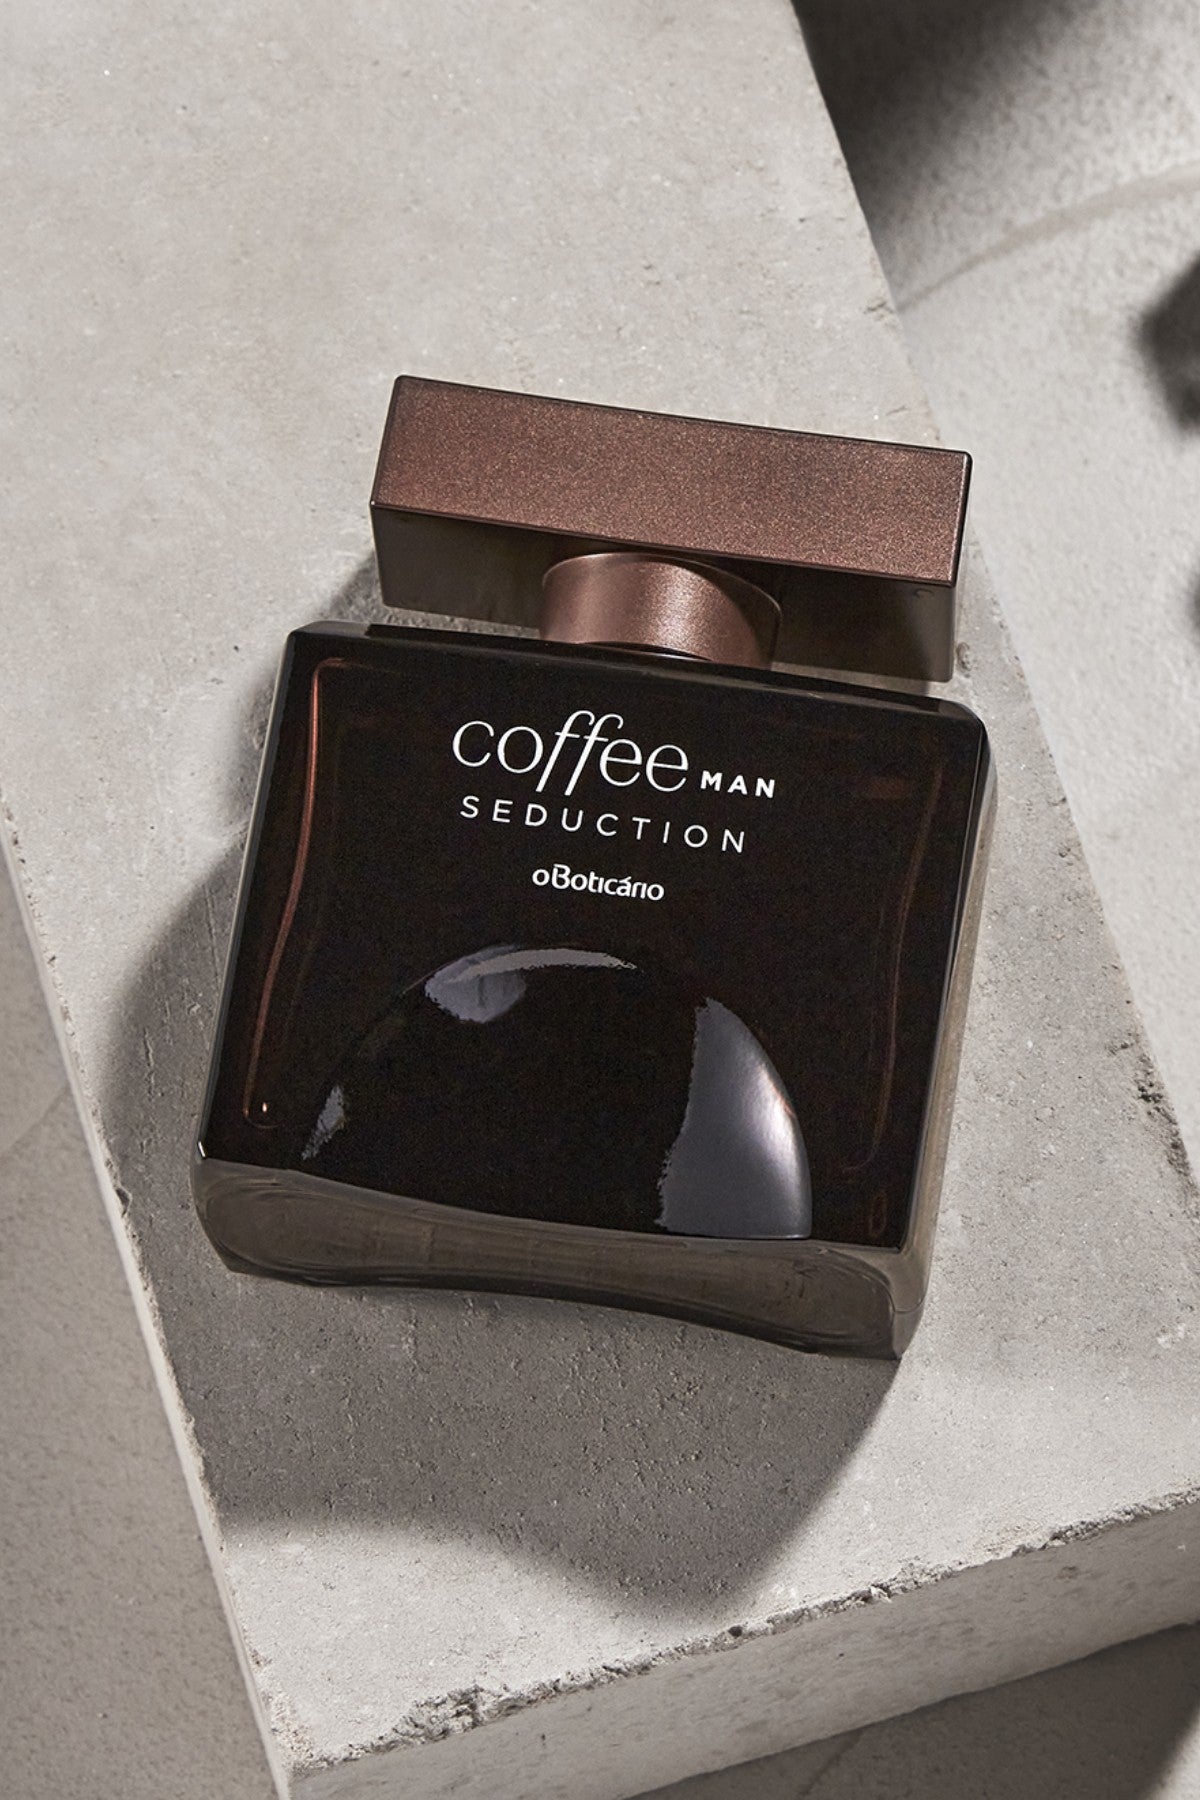 Foto: Perfuem Coffee Woman Fusion, do Boticário, combina o aroma cremoso e  picante do Cacau com o Café Arábica, inspirado na sobremesa italiana  Tiramisu - Purepeople